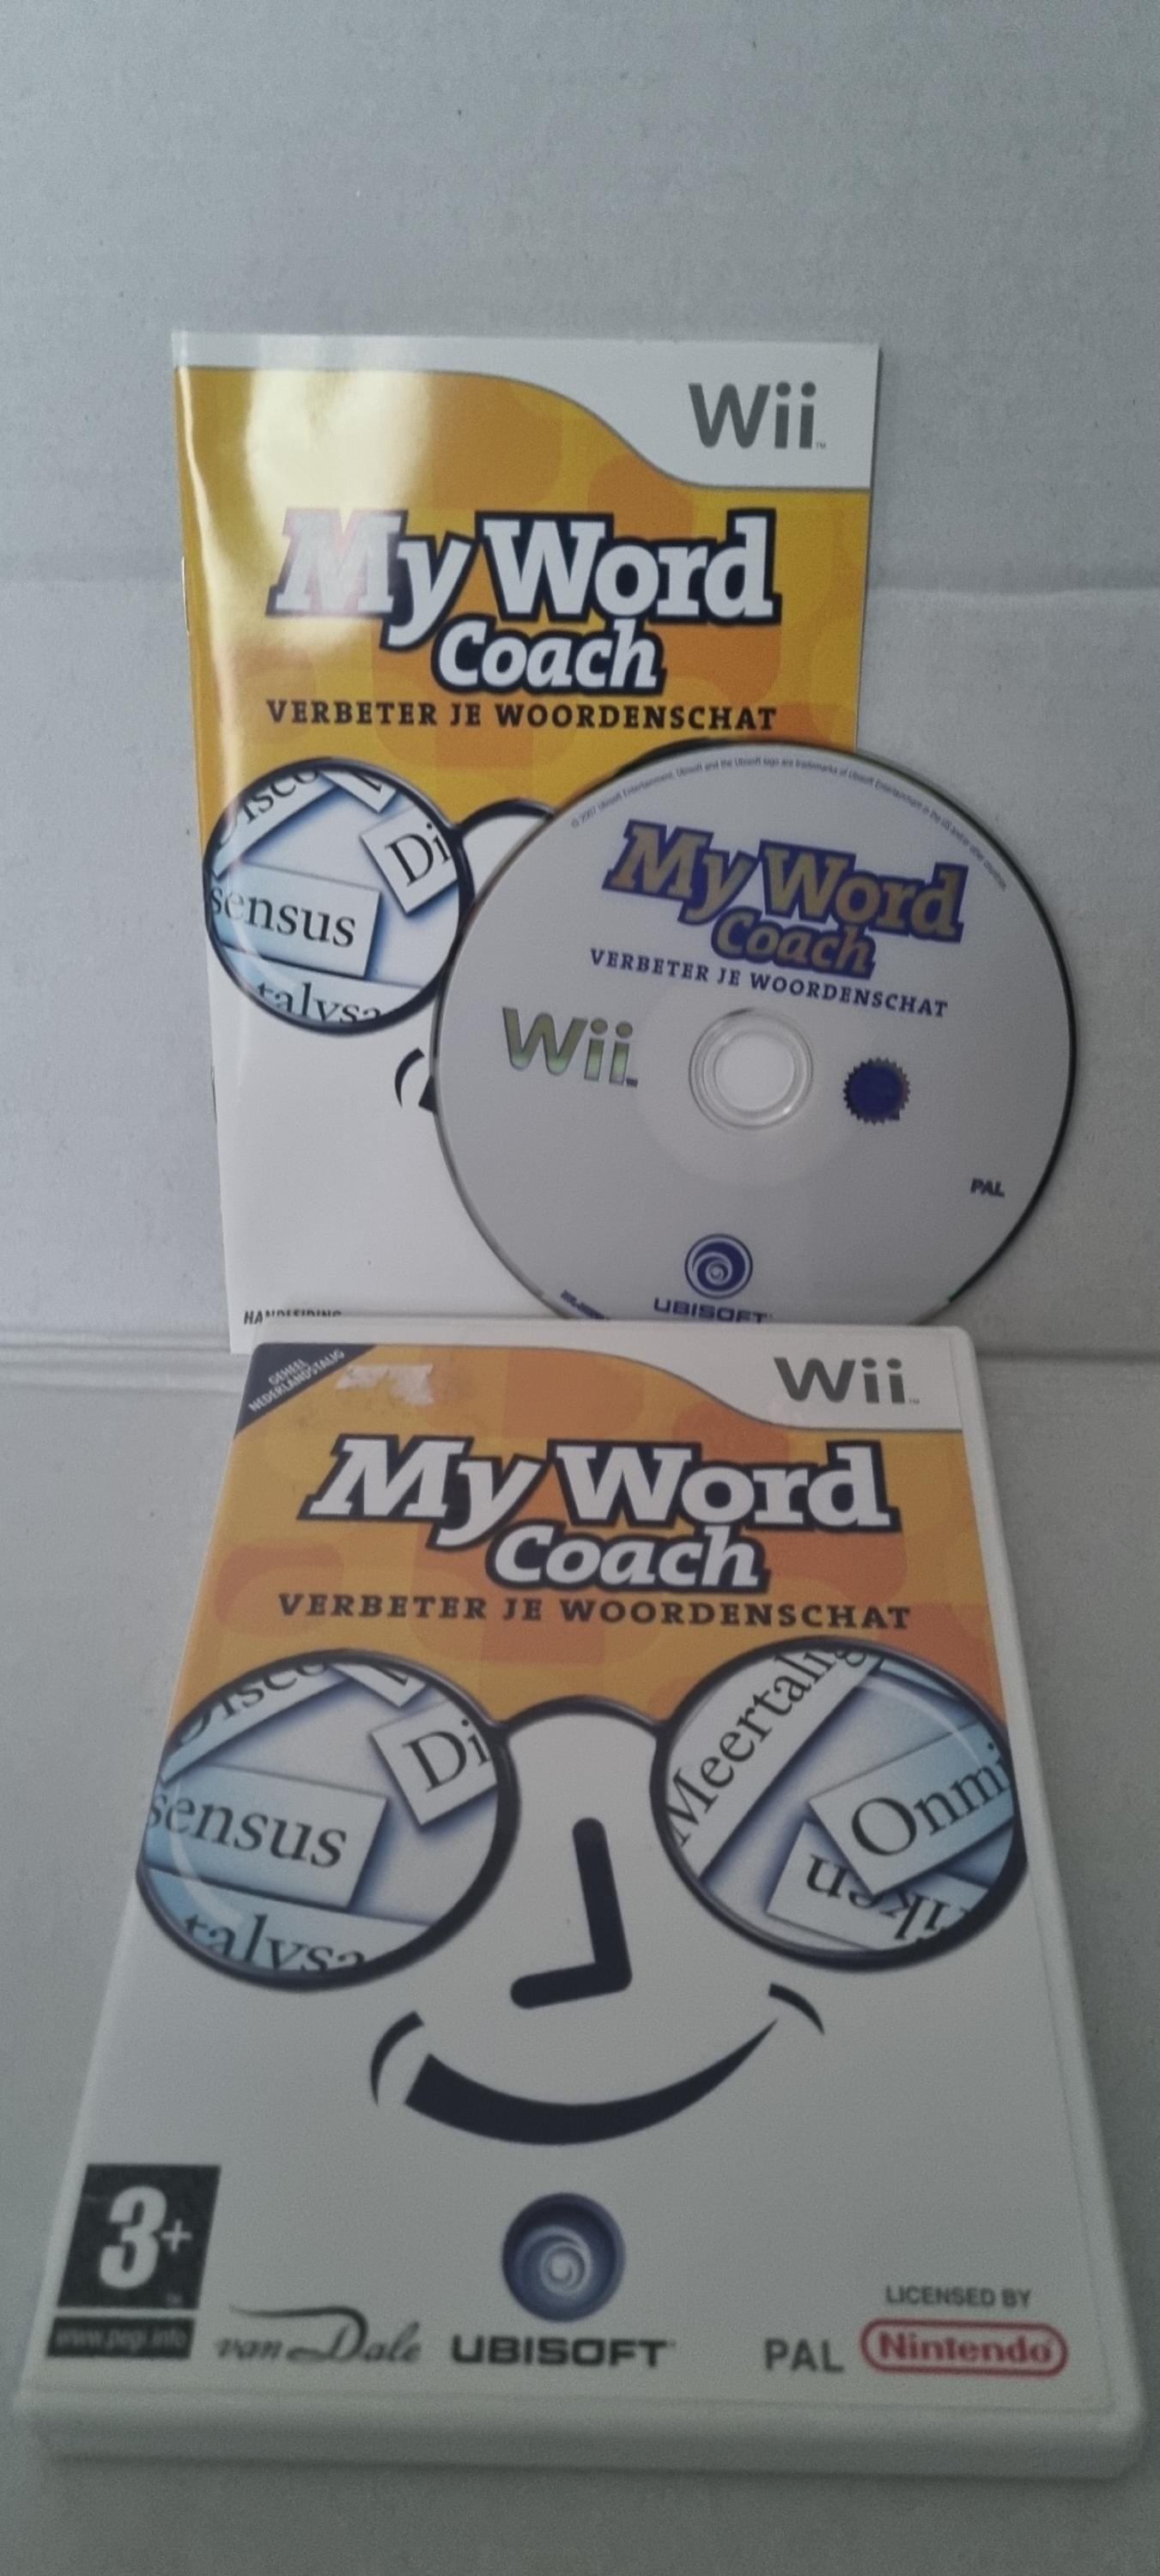 My word coach: Verbeter je woordenschat Nintendo Wii